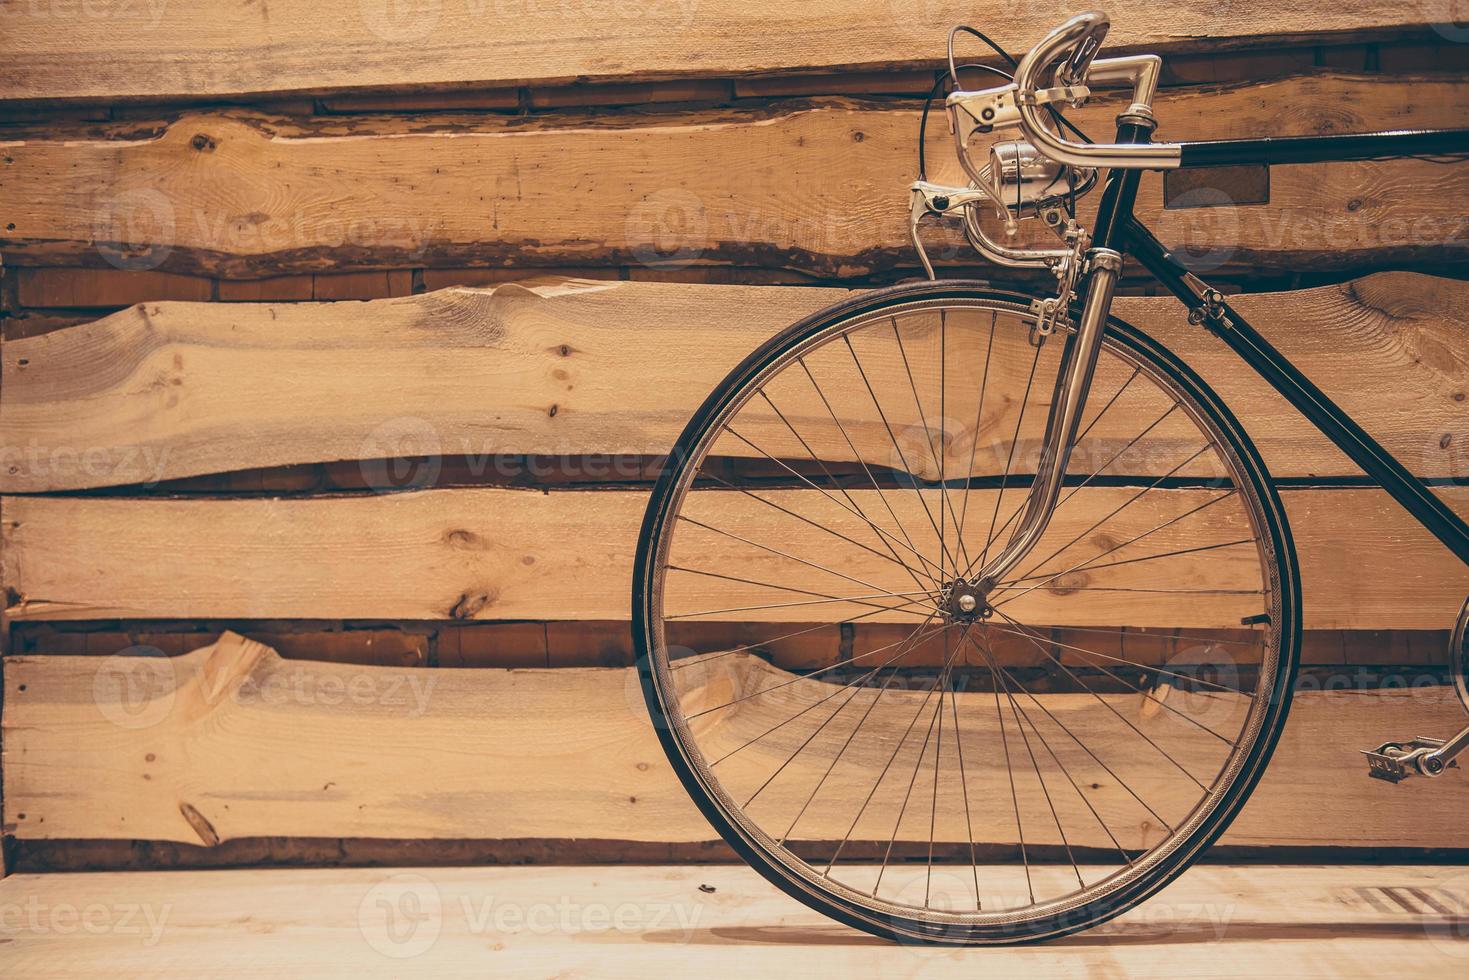 gammaldags elegans. närbild av retro styled cykel stående mot grov trä- vägg foto